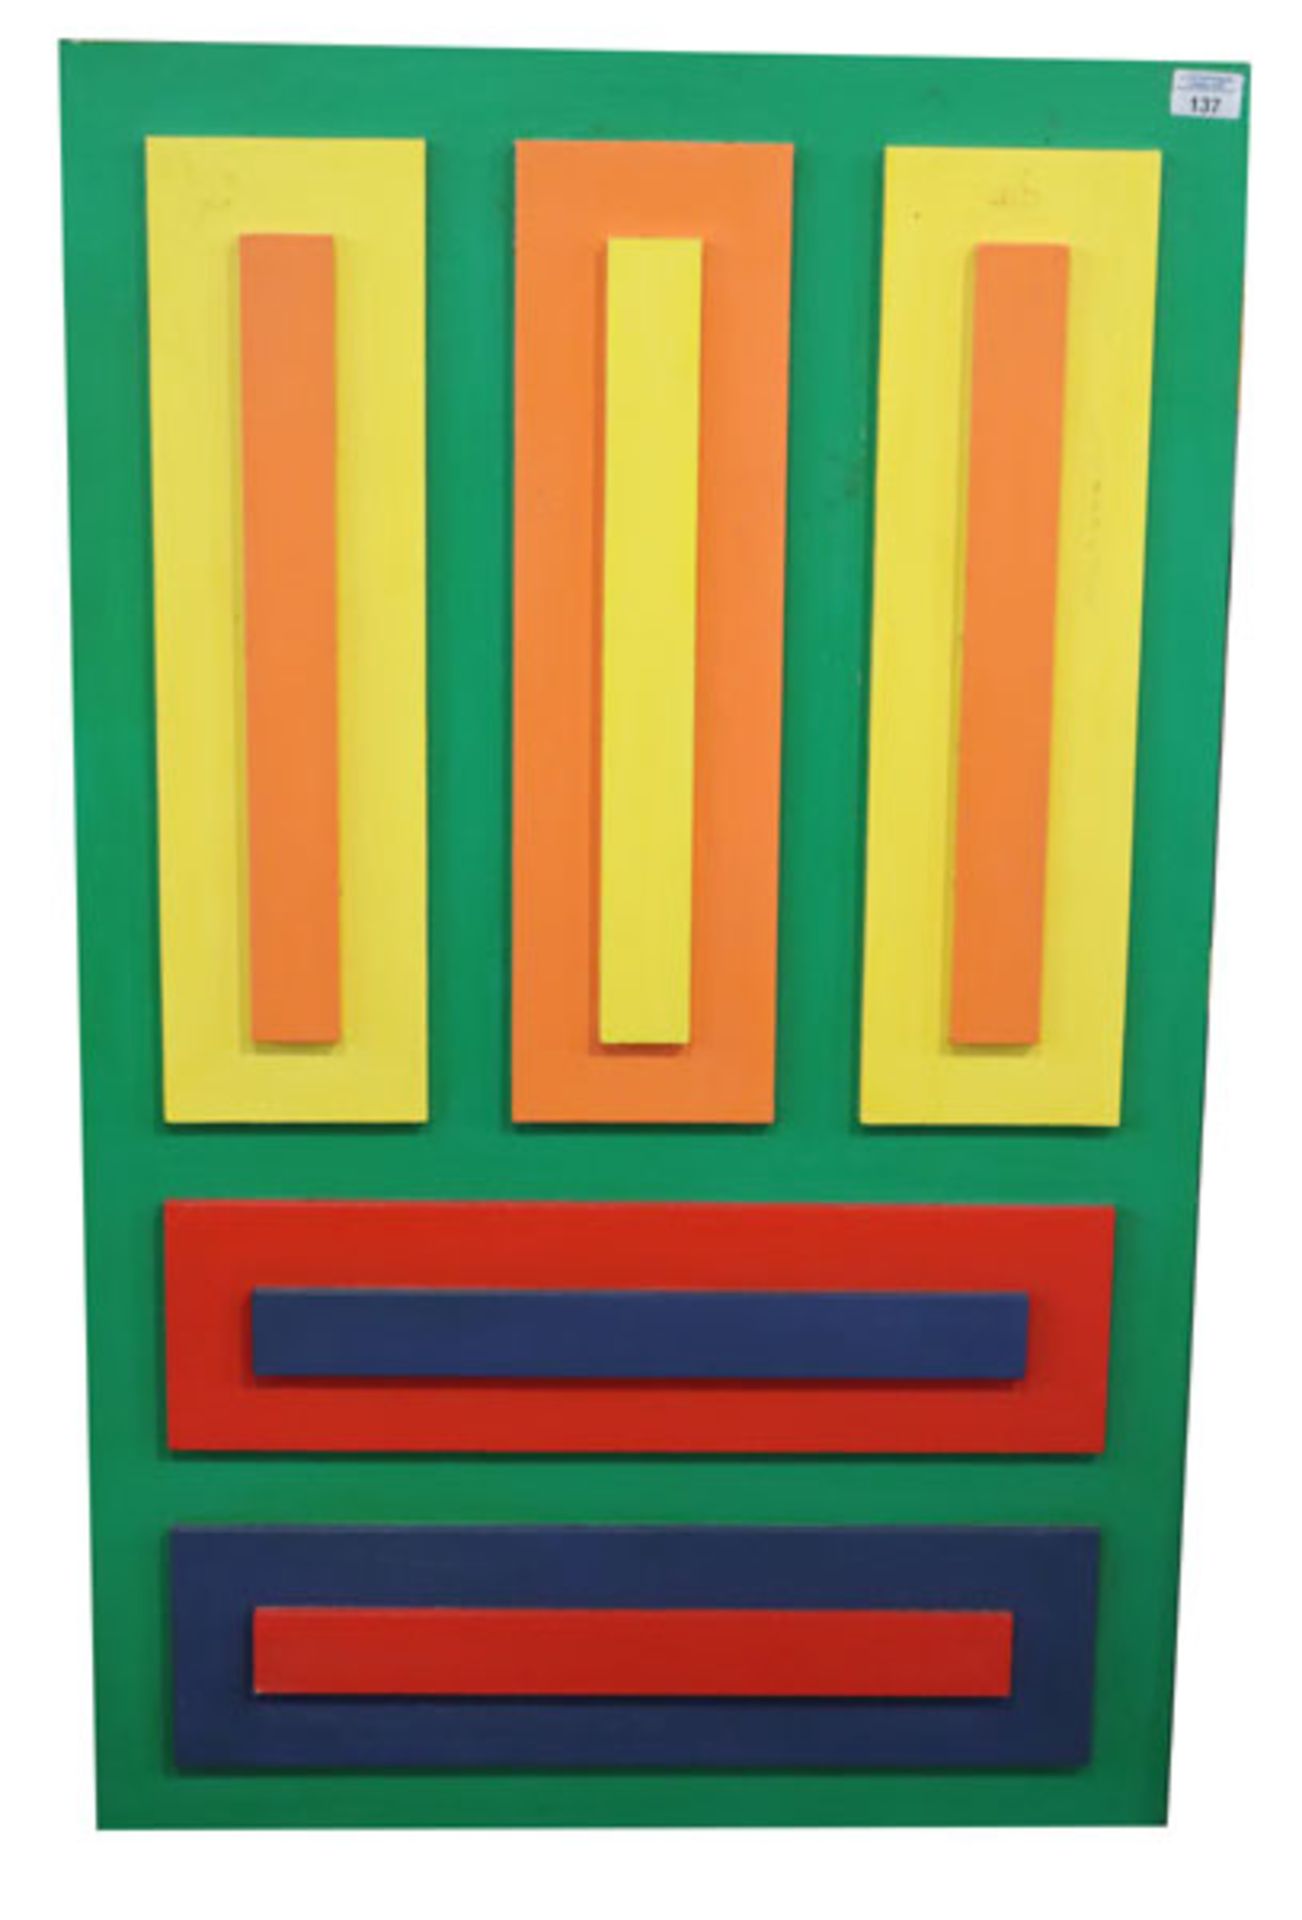 Holzobjekt 'Farbschichtung aus 5 Elemanten', rückseitig bez. Rudolf Härtl, Juli 1971, * 1930 München